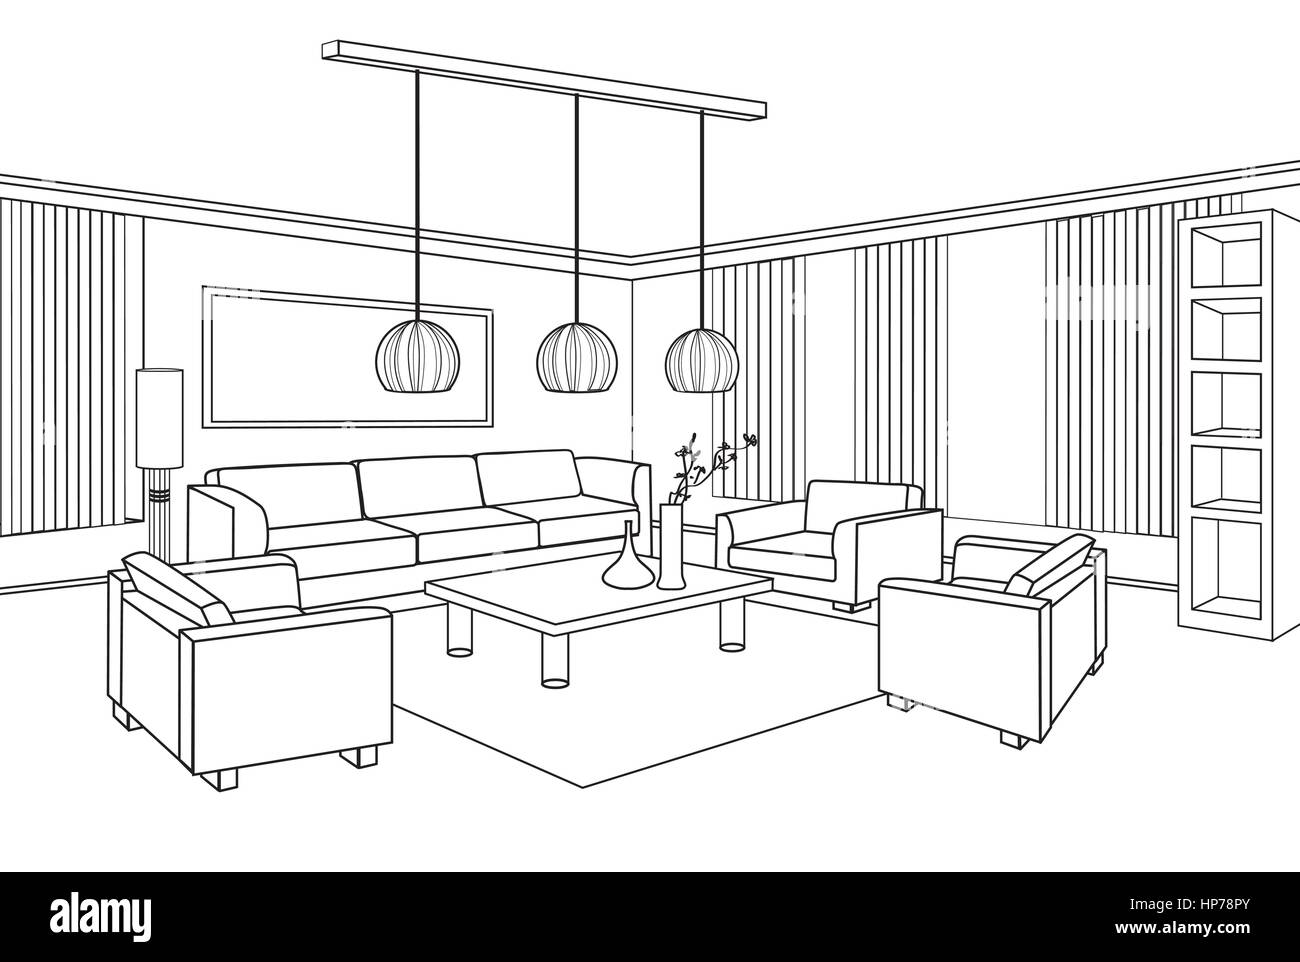 Wohnzimmer Blick. Interior skizzieren Skizze. Möbel Blaupause. Stock Vektor